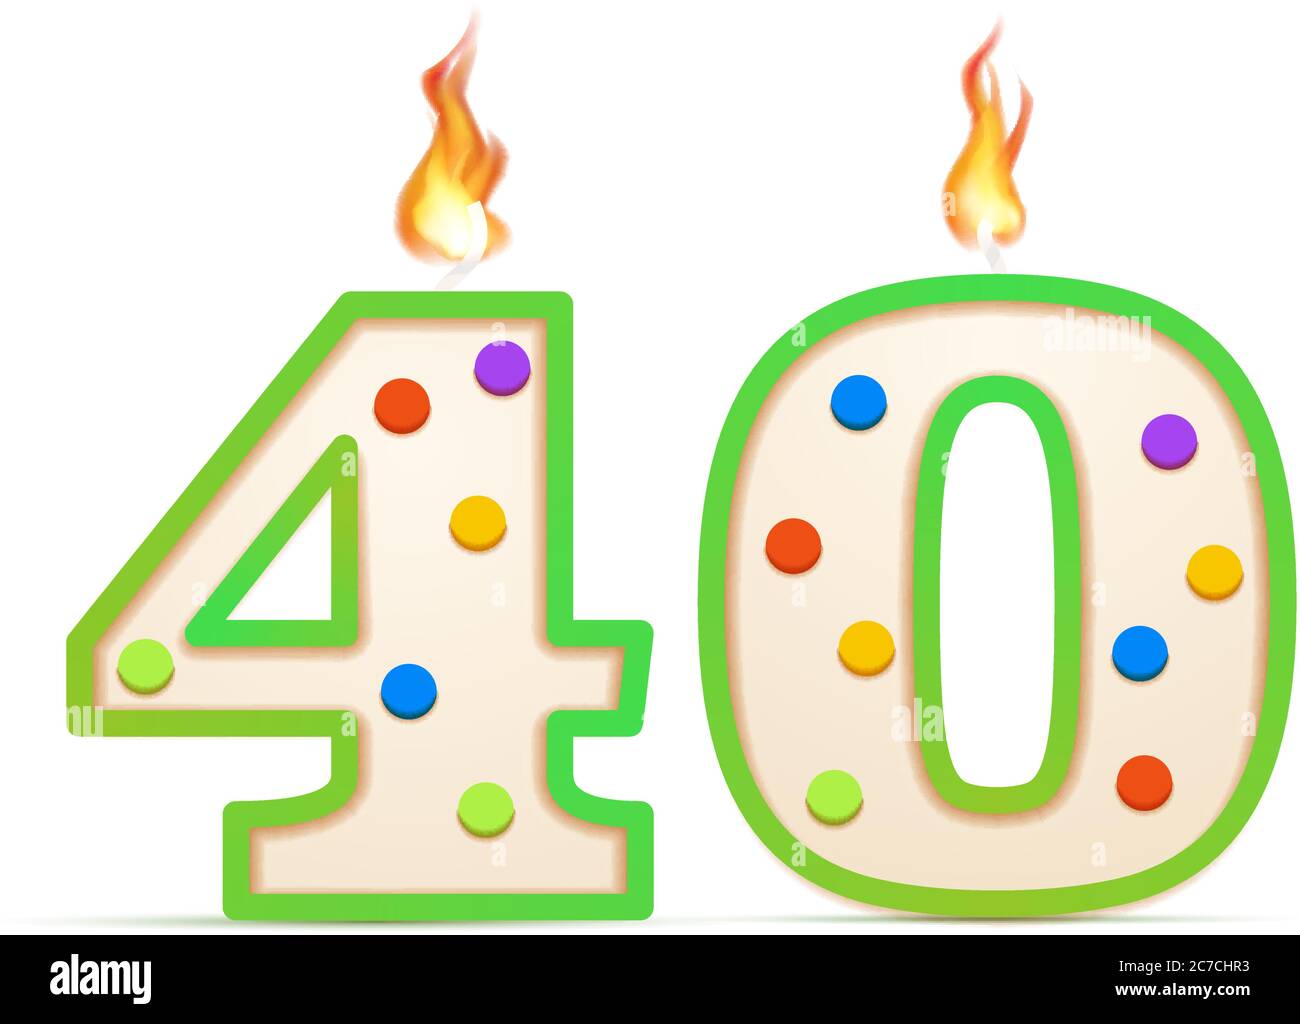 40 Jahre Jubiläum, 40 nummerförmige Geburtstagskerze mit Feuer auf weiß  Stock-Vektorgrafik - Alamy